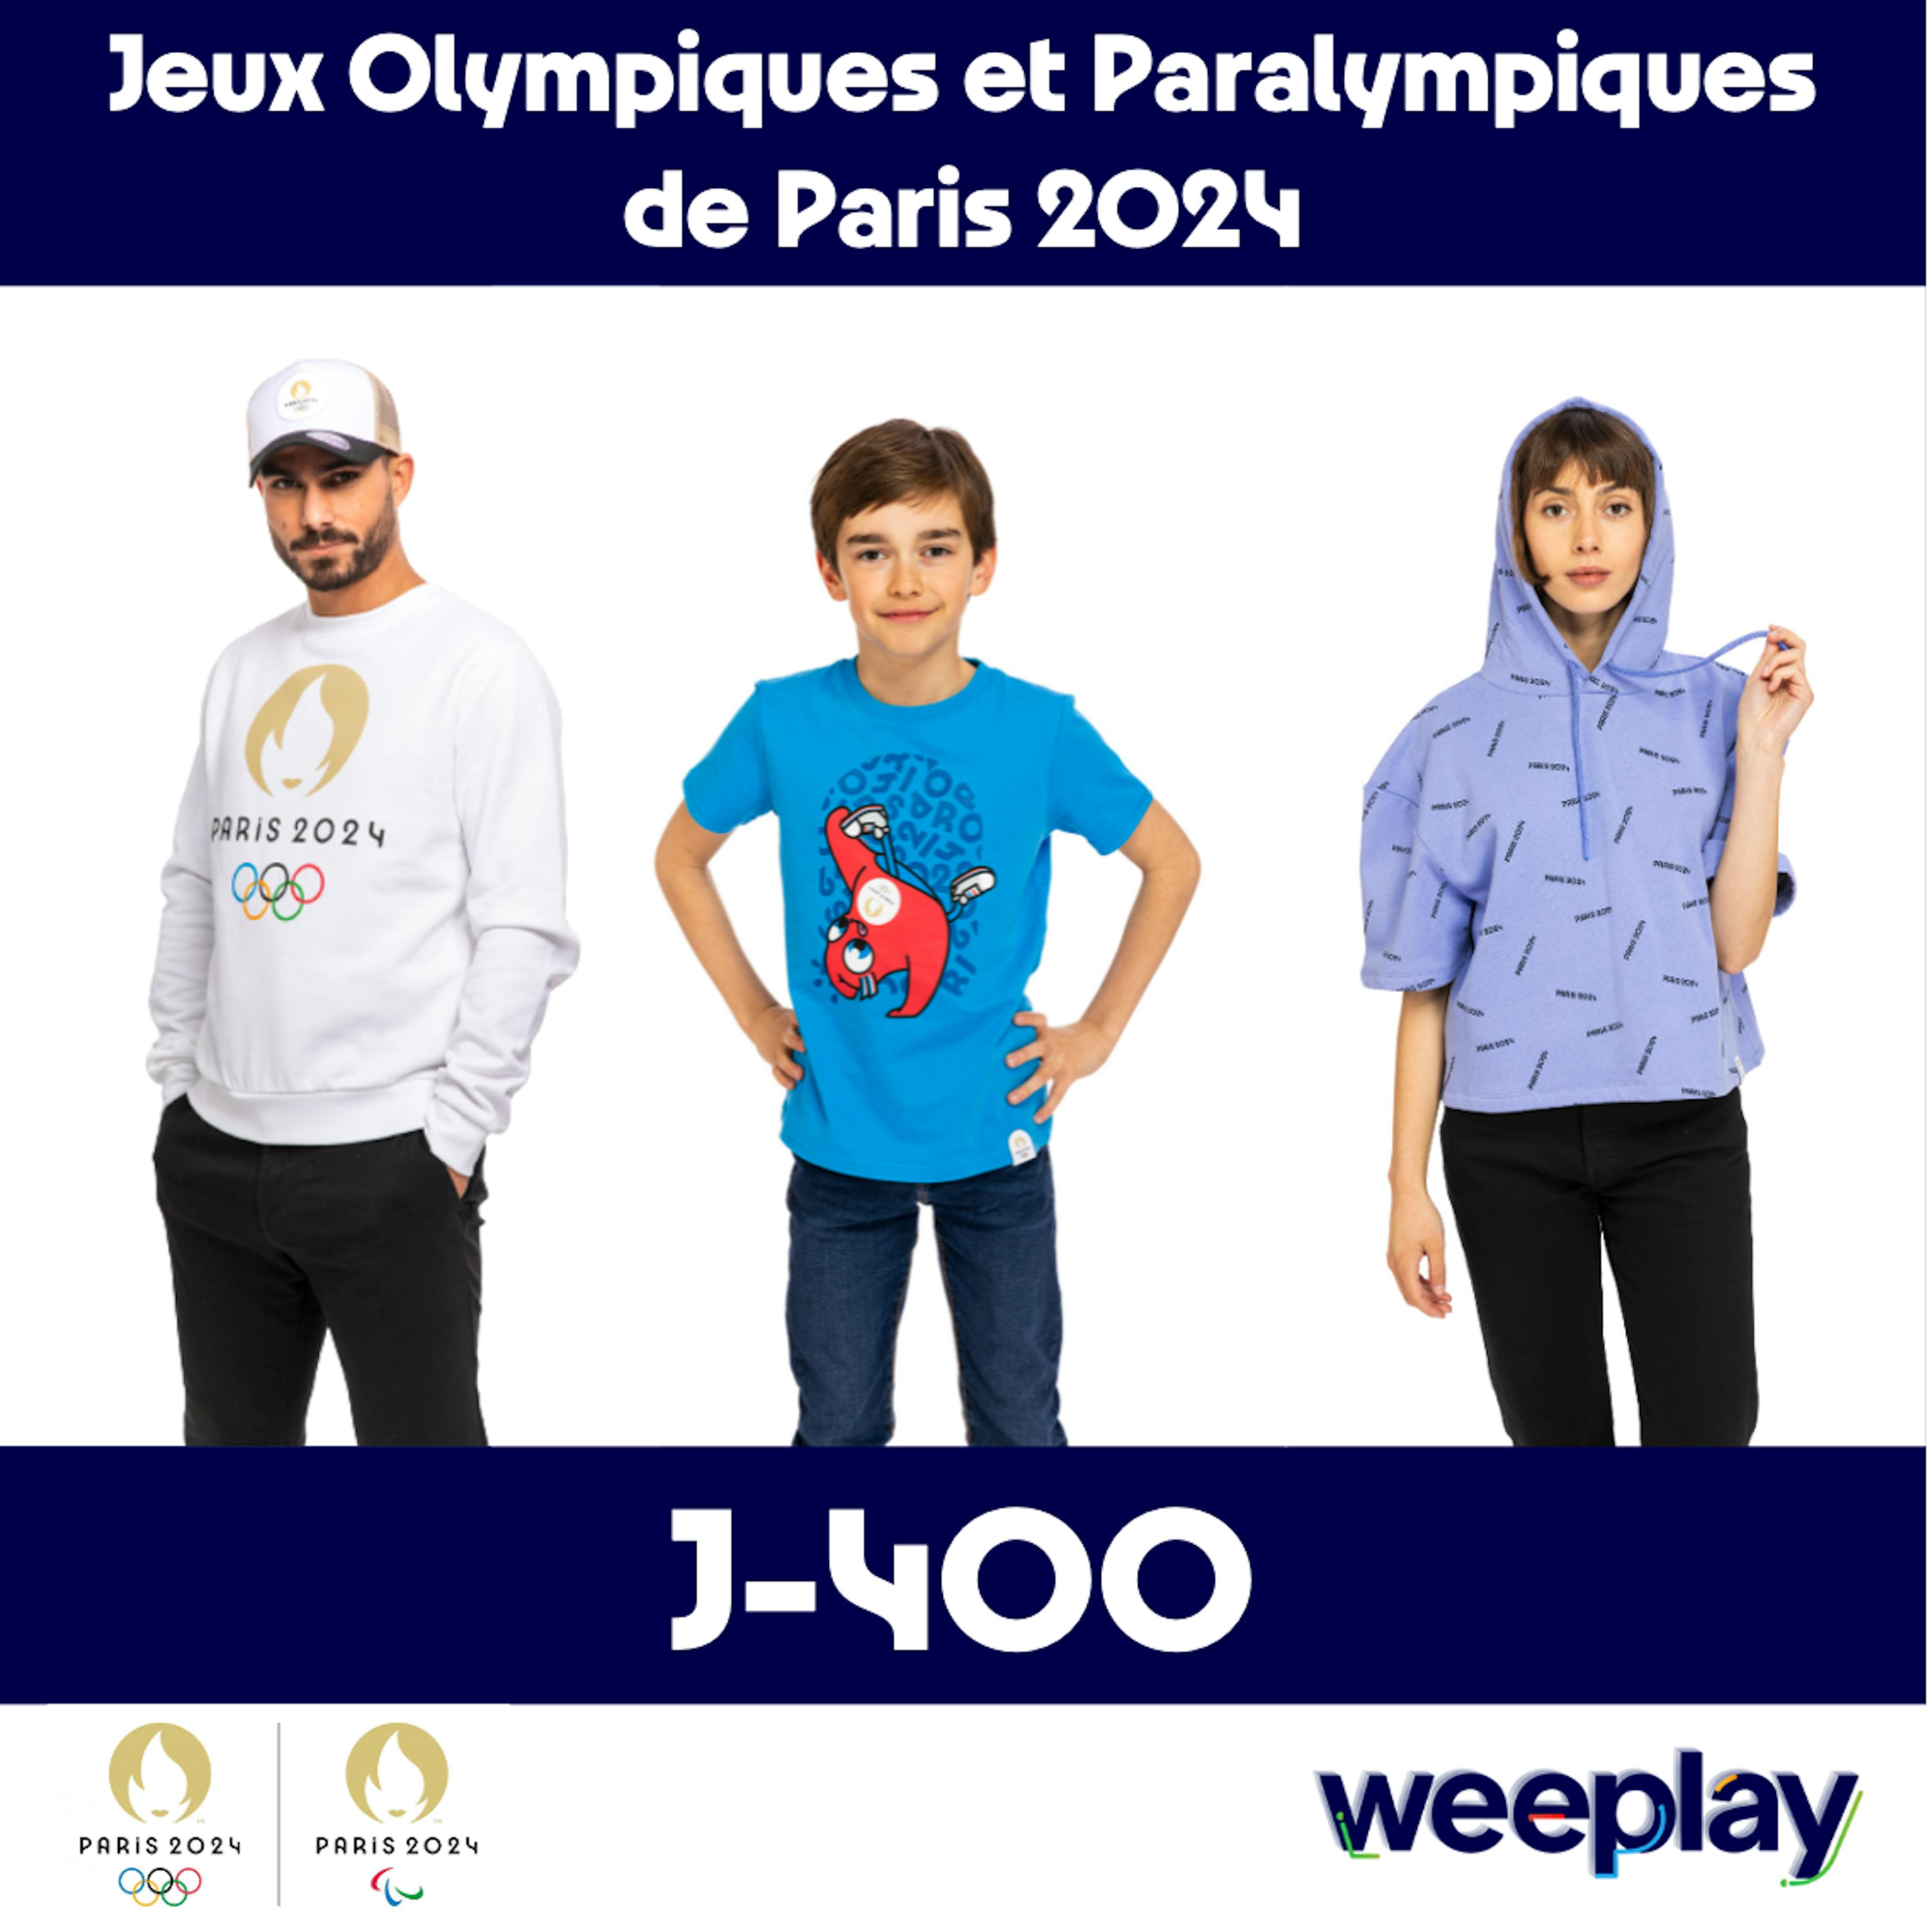 Plus que 400 jours avant les Jeux Olympiques et Paralympiques de Paris 2024